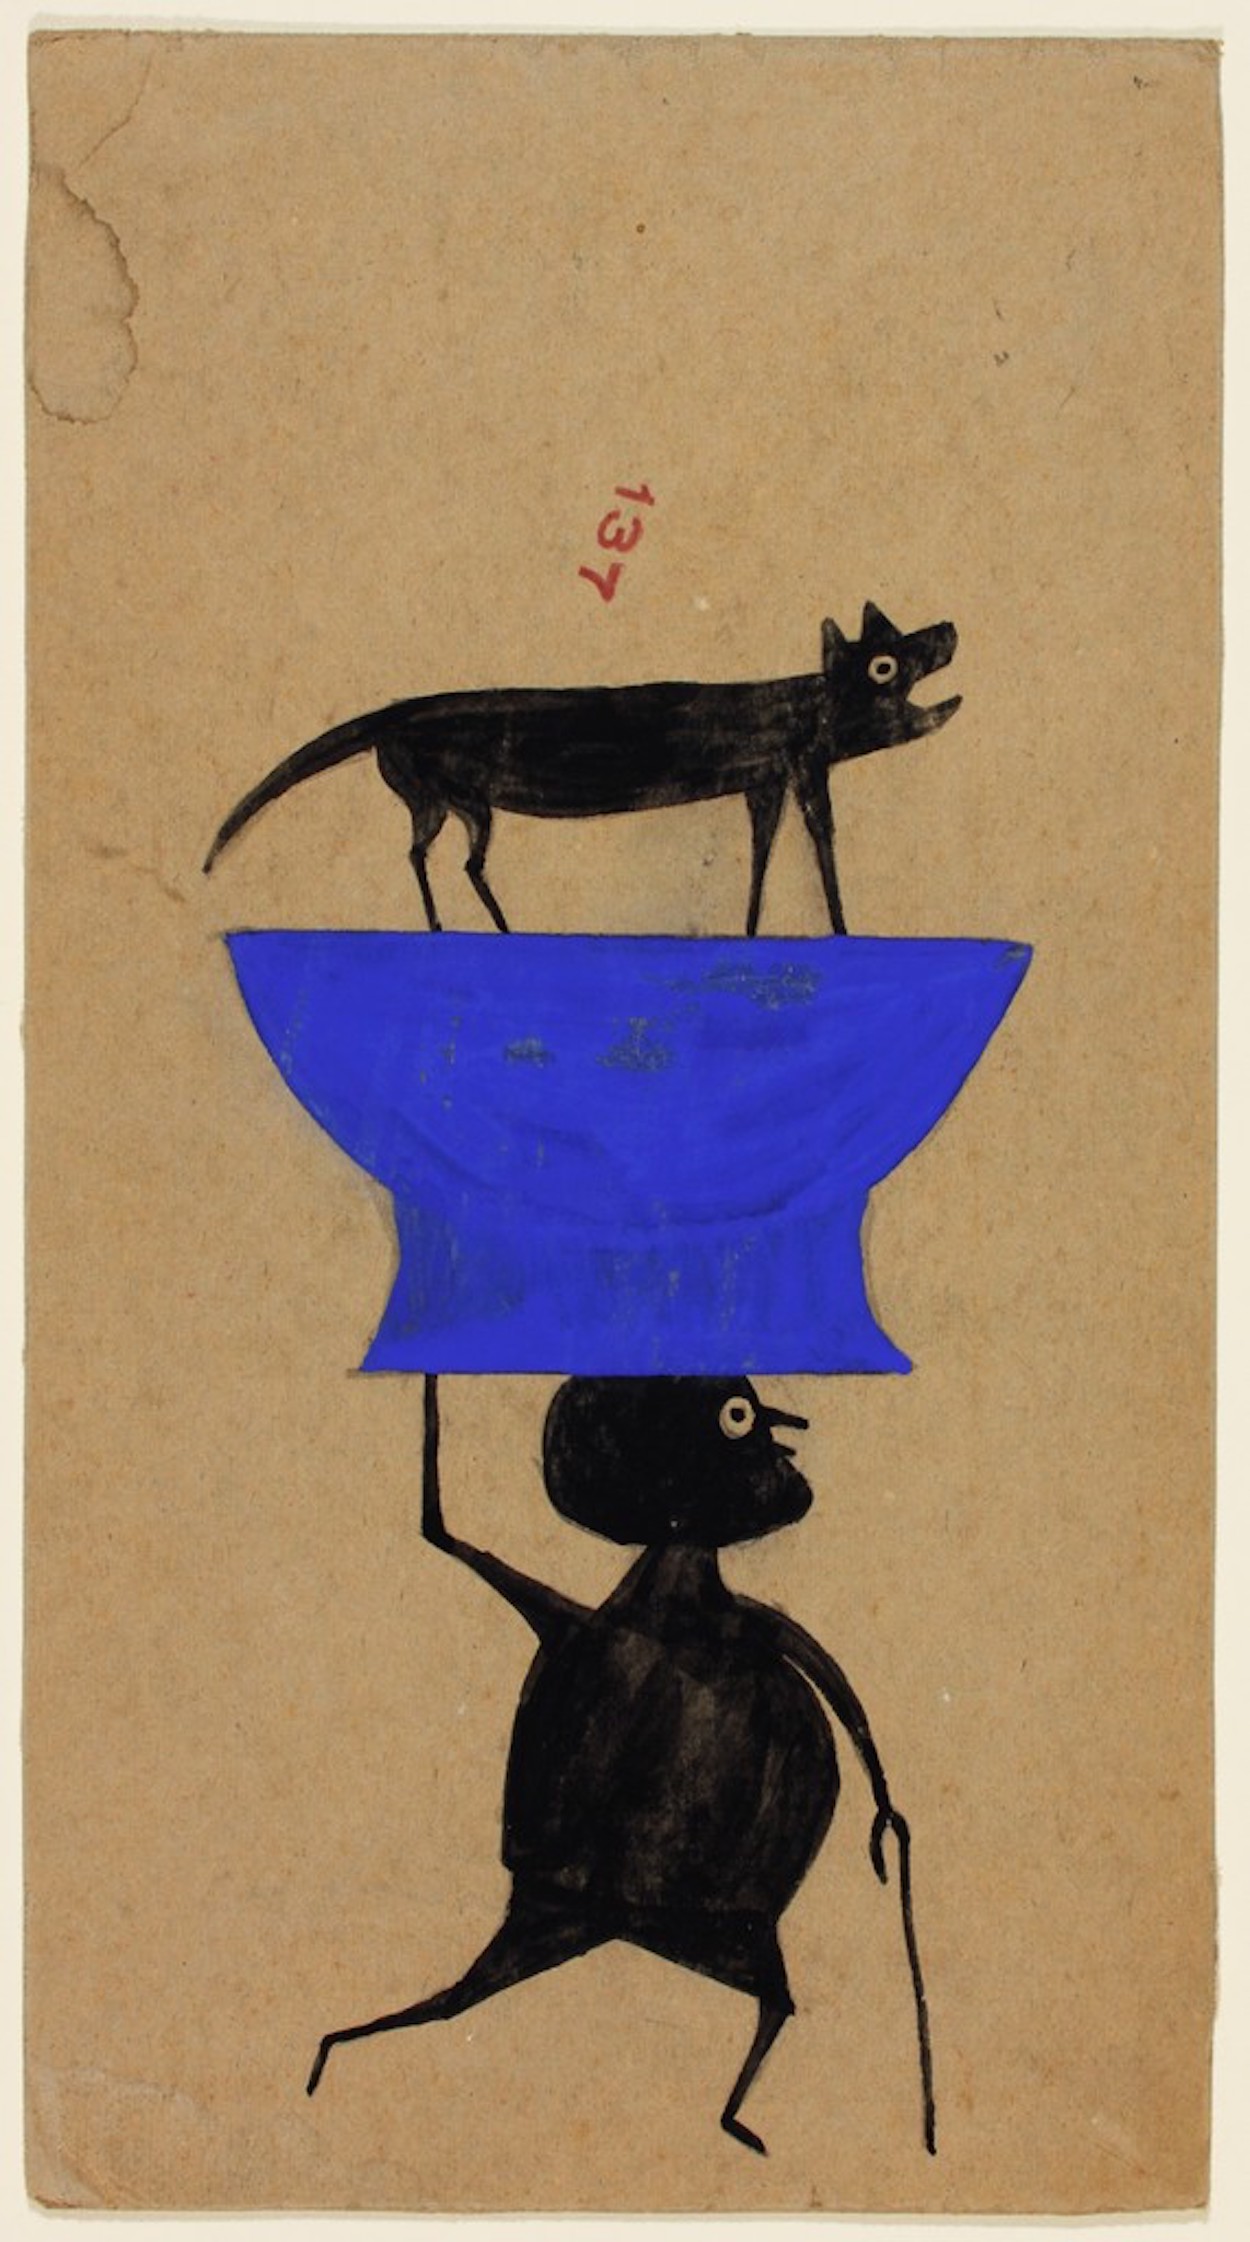 Utan titel (en man bär en hund på ett objekt) by Bill Traylor - ca. 1939–1942 - 33,6 x 18,4 cm 